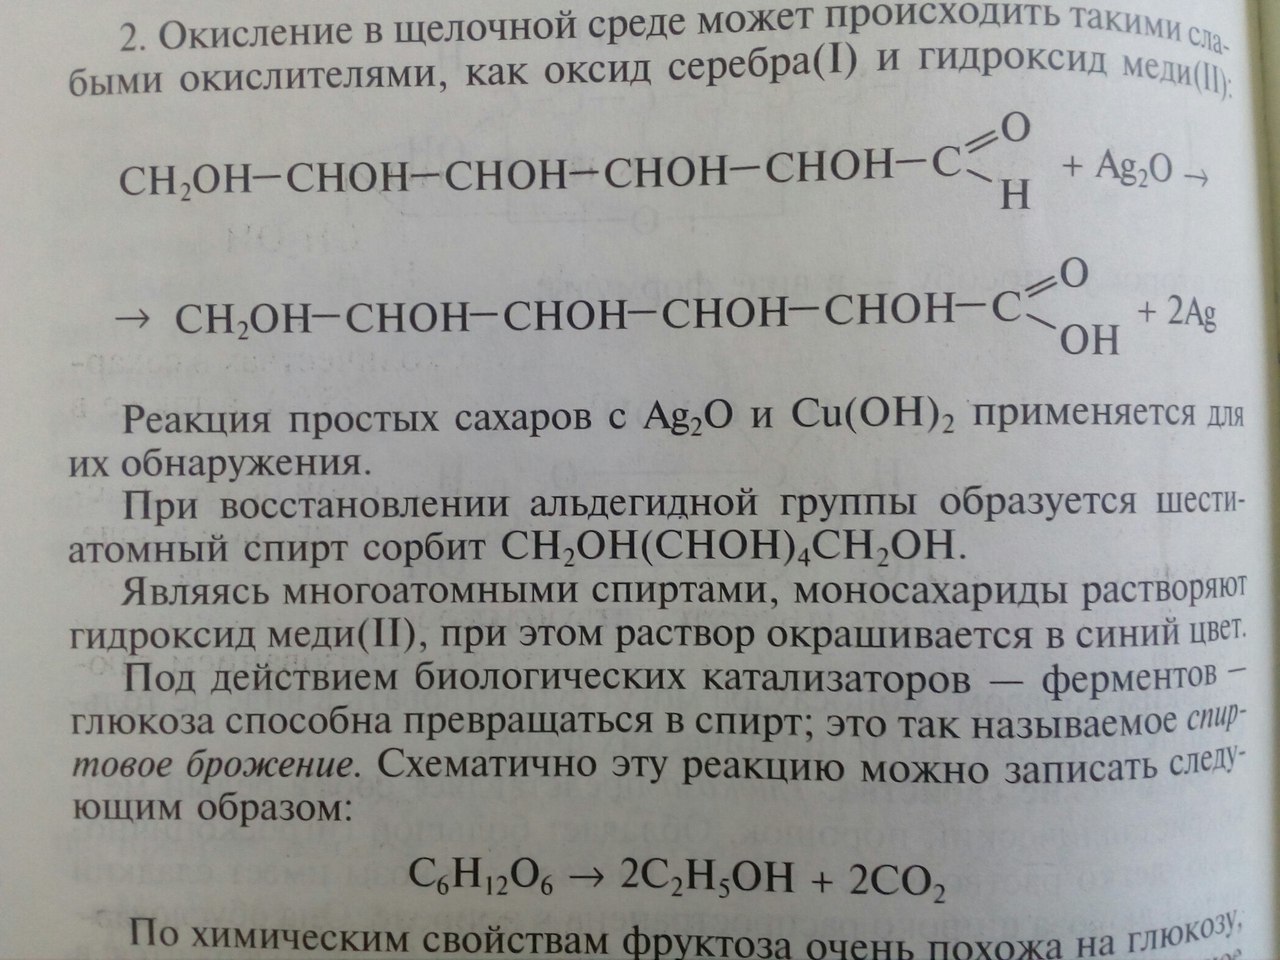 Гидроксид меди 2 и цинк реакция. Фруктоза и гидроксид меди. Фруктоза и гидроксид меди 2. Фруктоза и гидроксид меди 2 реакция. Фруктоза с гидроксидом меди 2 без нагревания.